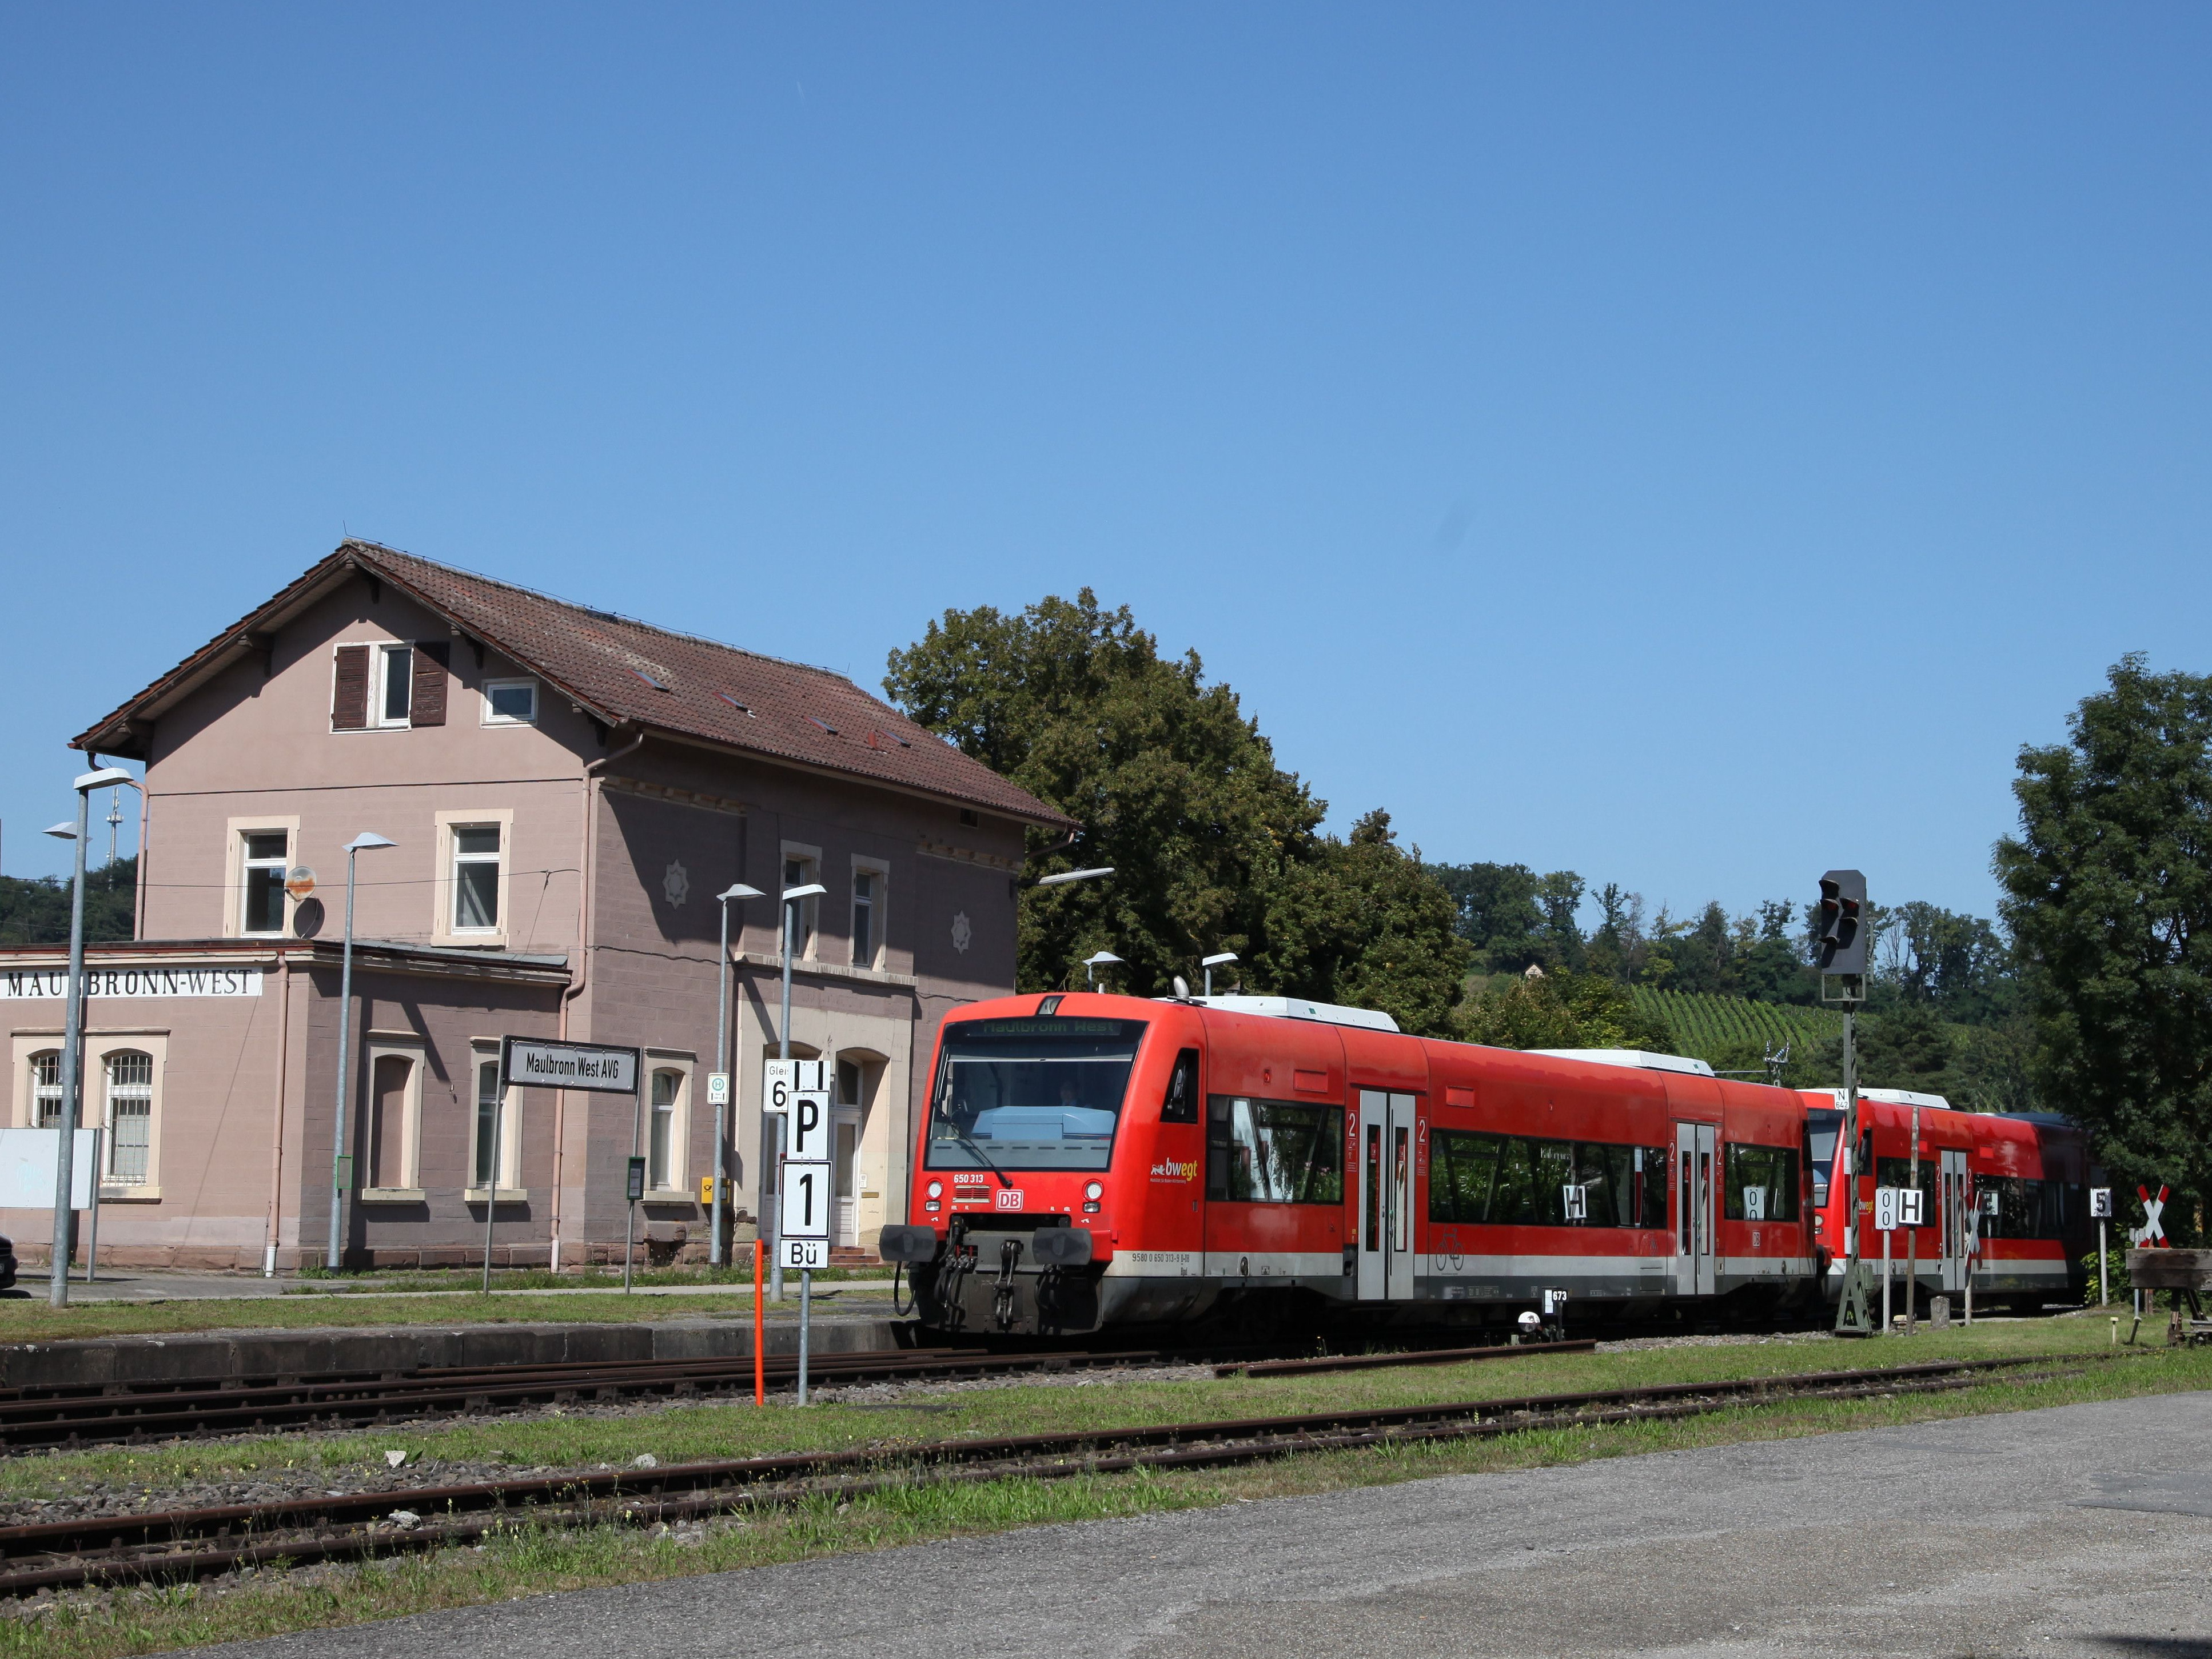 Zug Freizeitexpress Kloster Maulbronn vor dem Bahnhof Maulbronn West